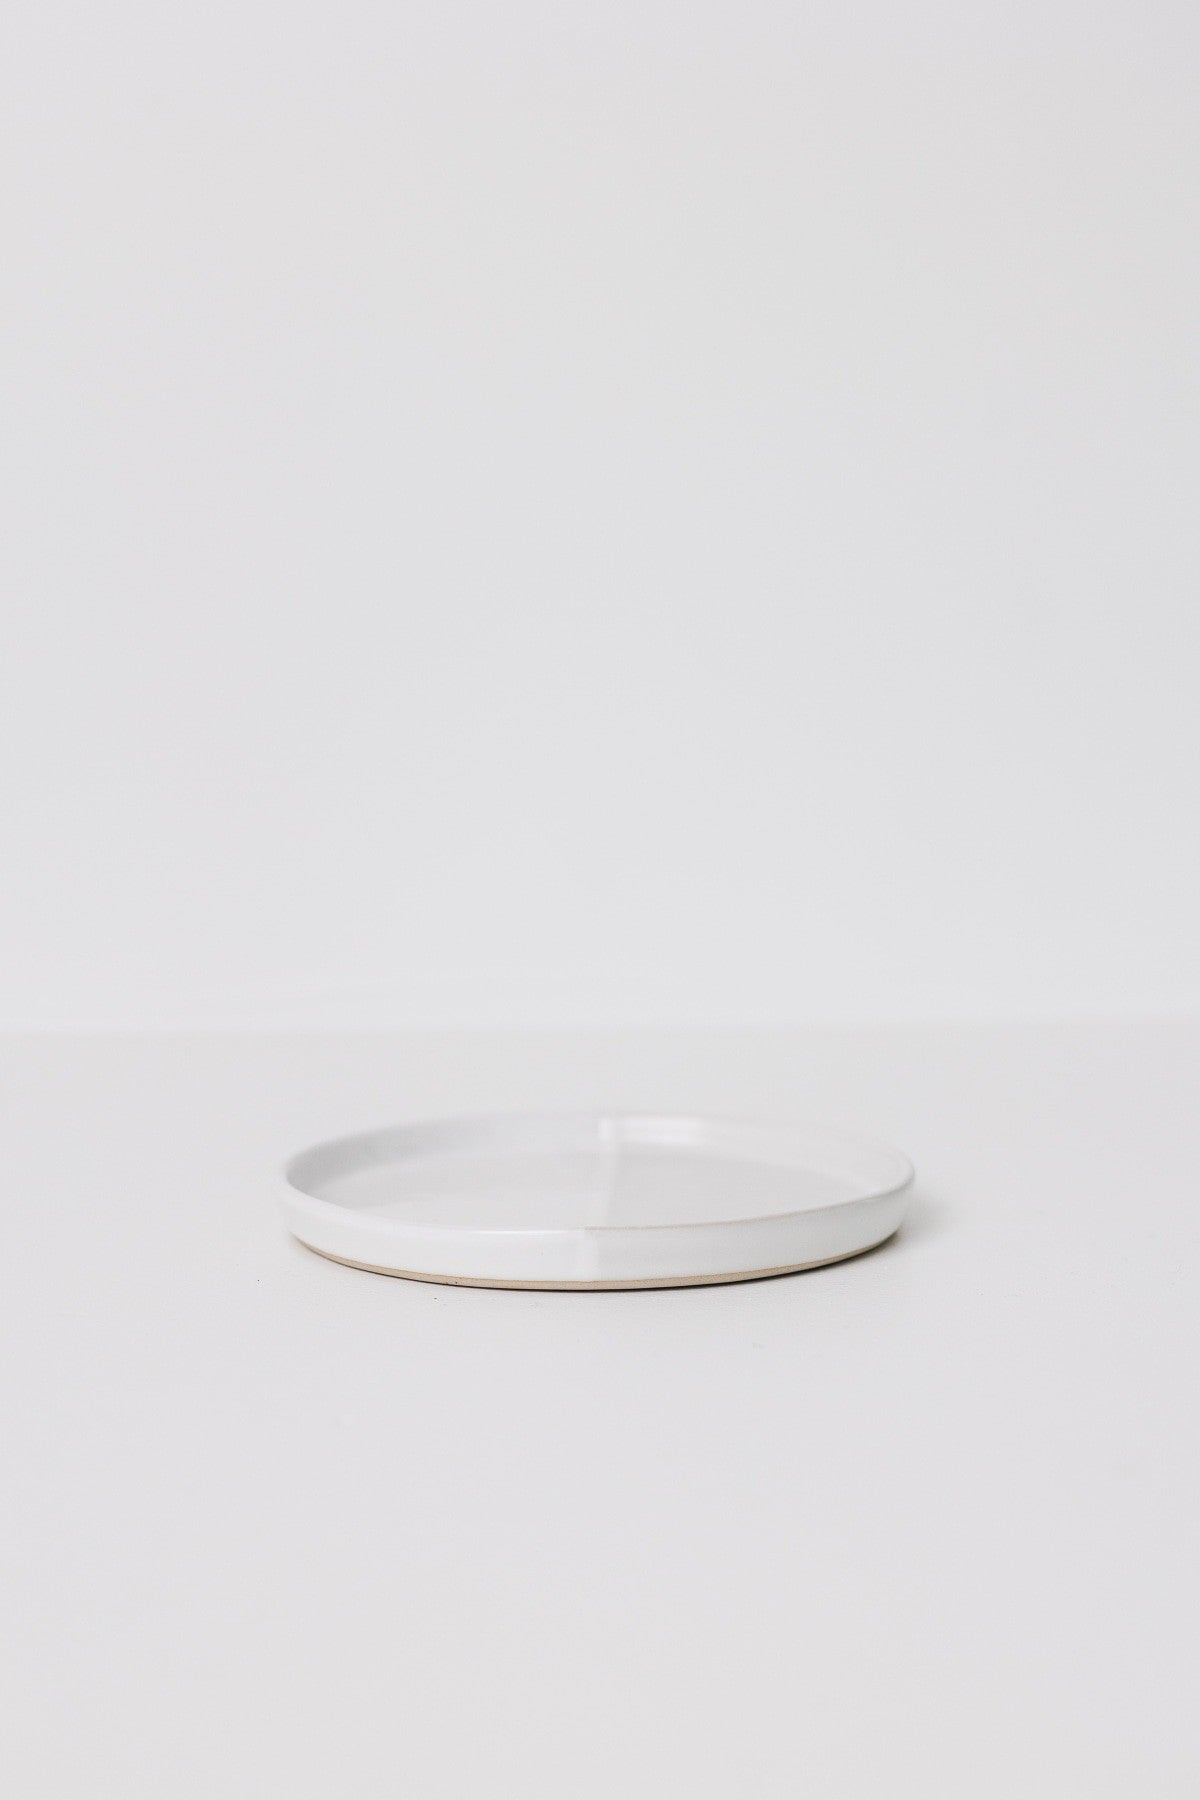 Sonnet Appetizer Plate - Matte White/Glossy White - Set of 6